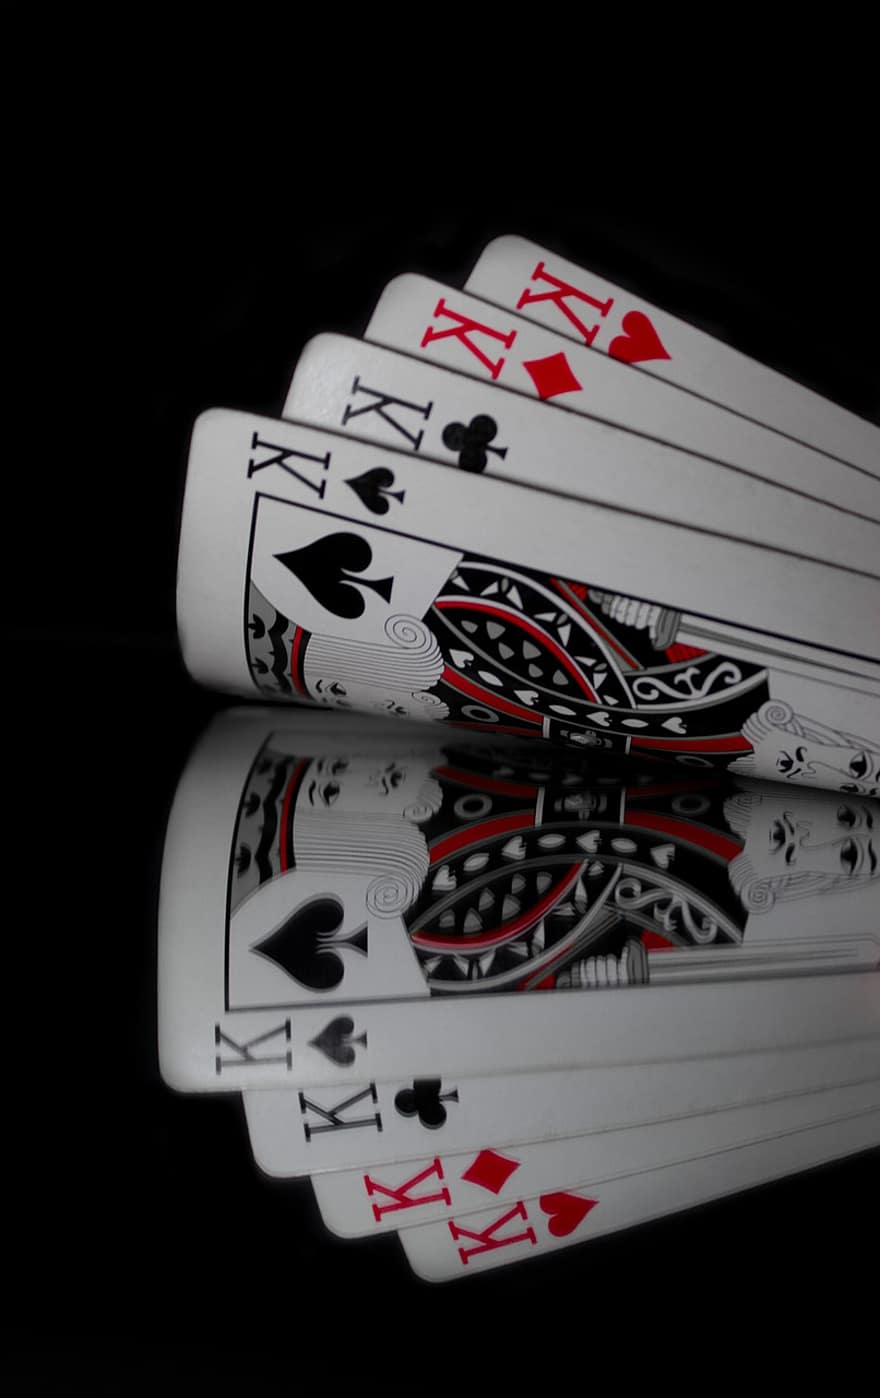 Karten, Glücksspiel, Reflexion, Poker, Kartenspiele, Kasino, As, abspielen, Glück, Spaten, Erfolg